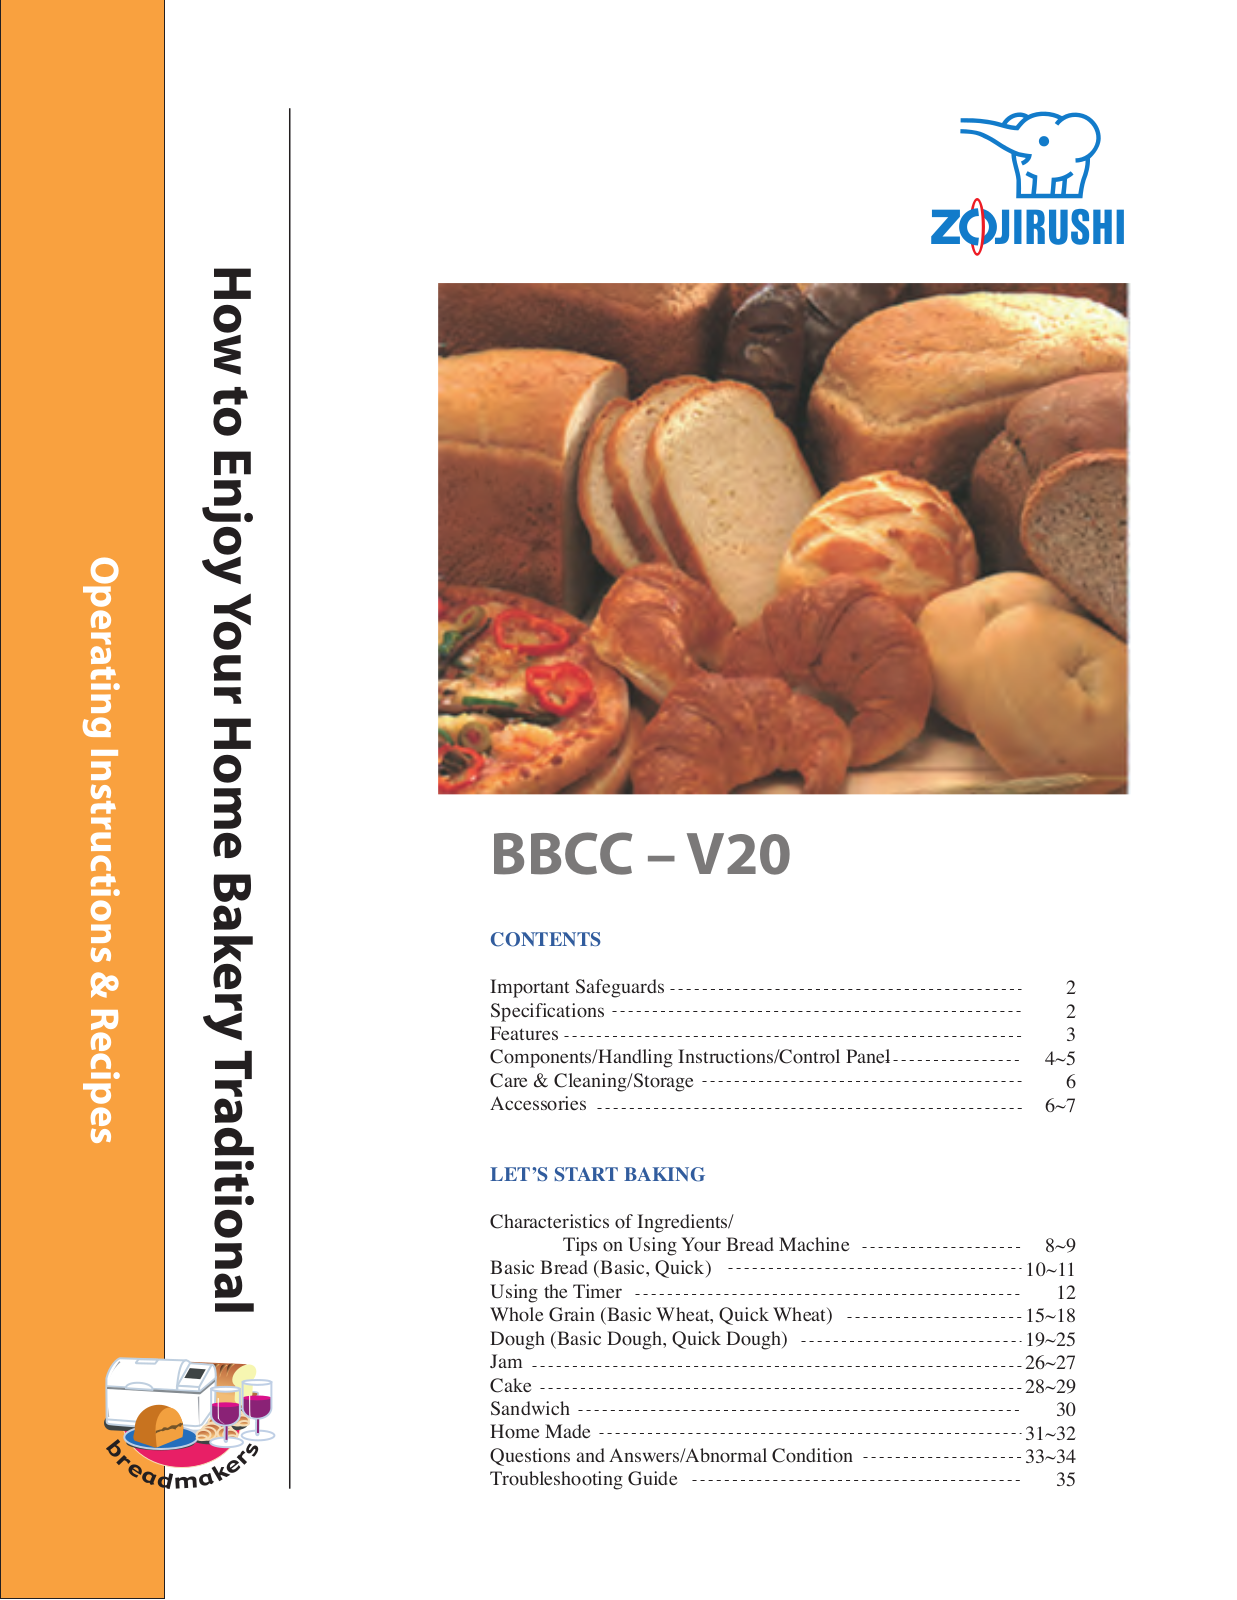 Zojirushi BBCC-V20 Owner's Manual